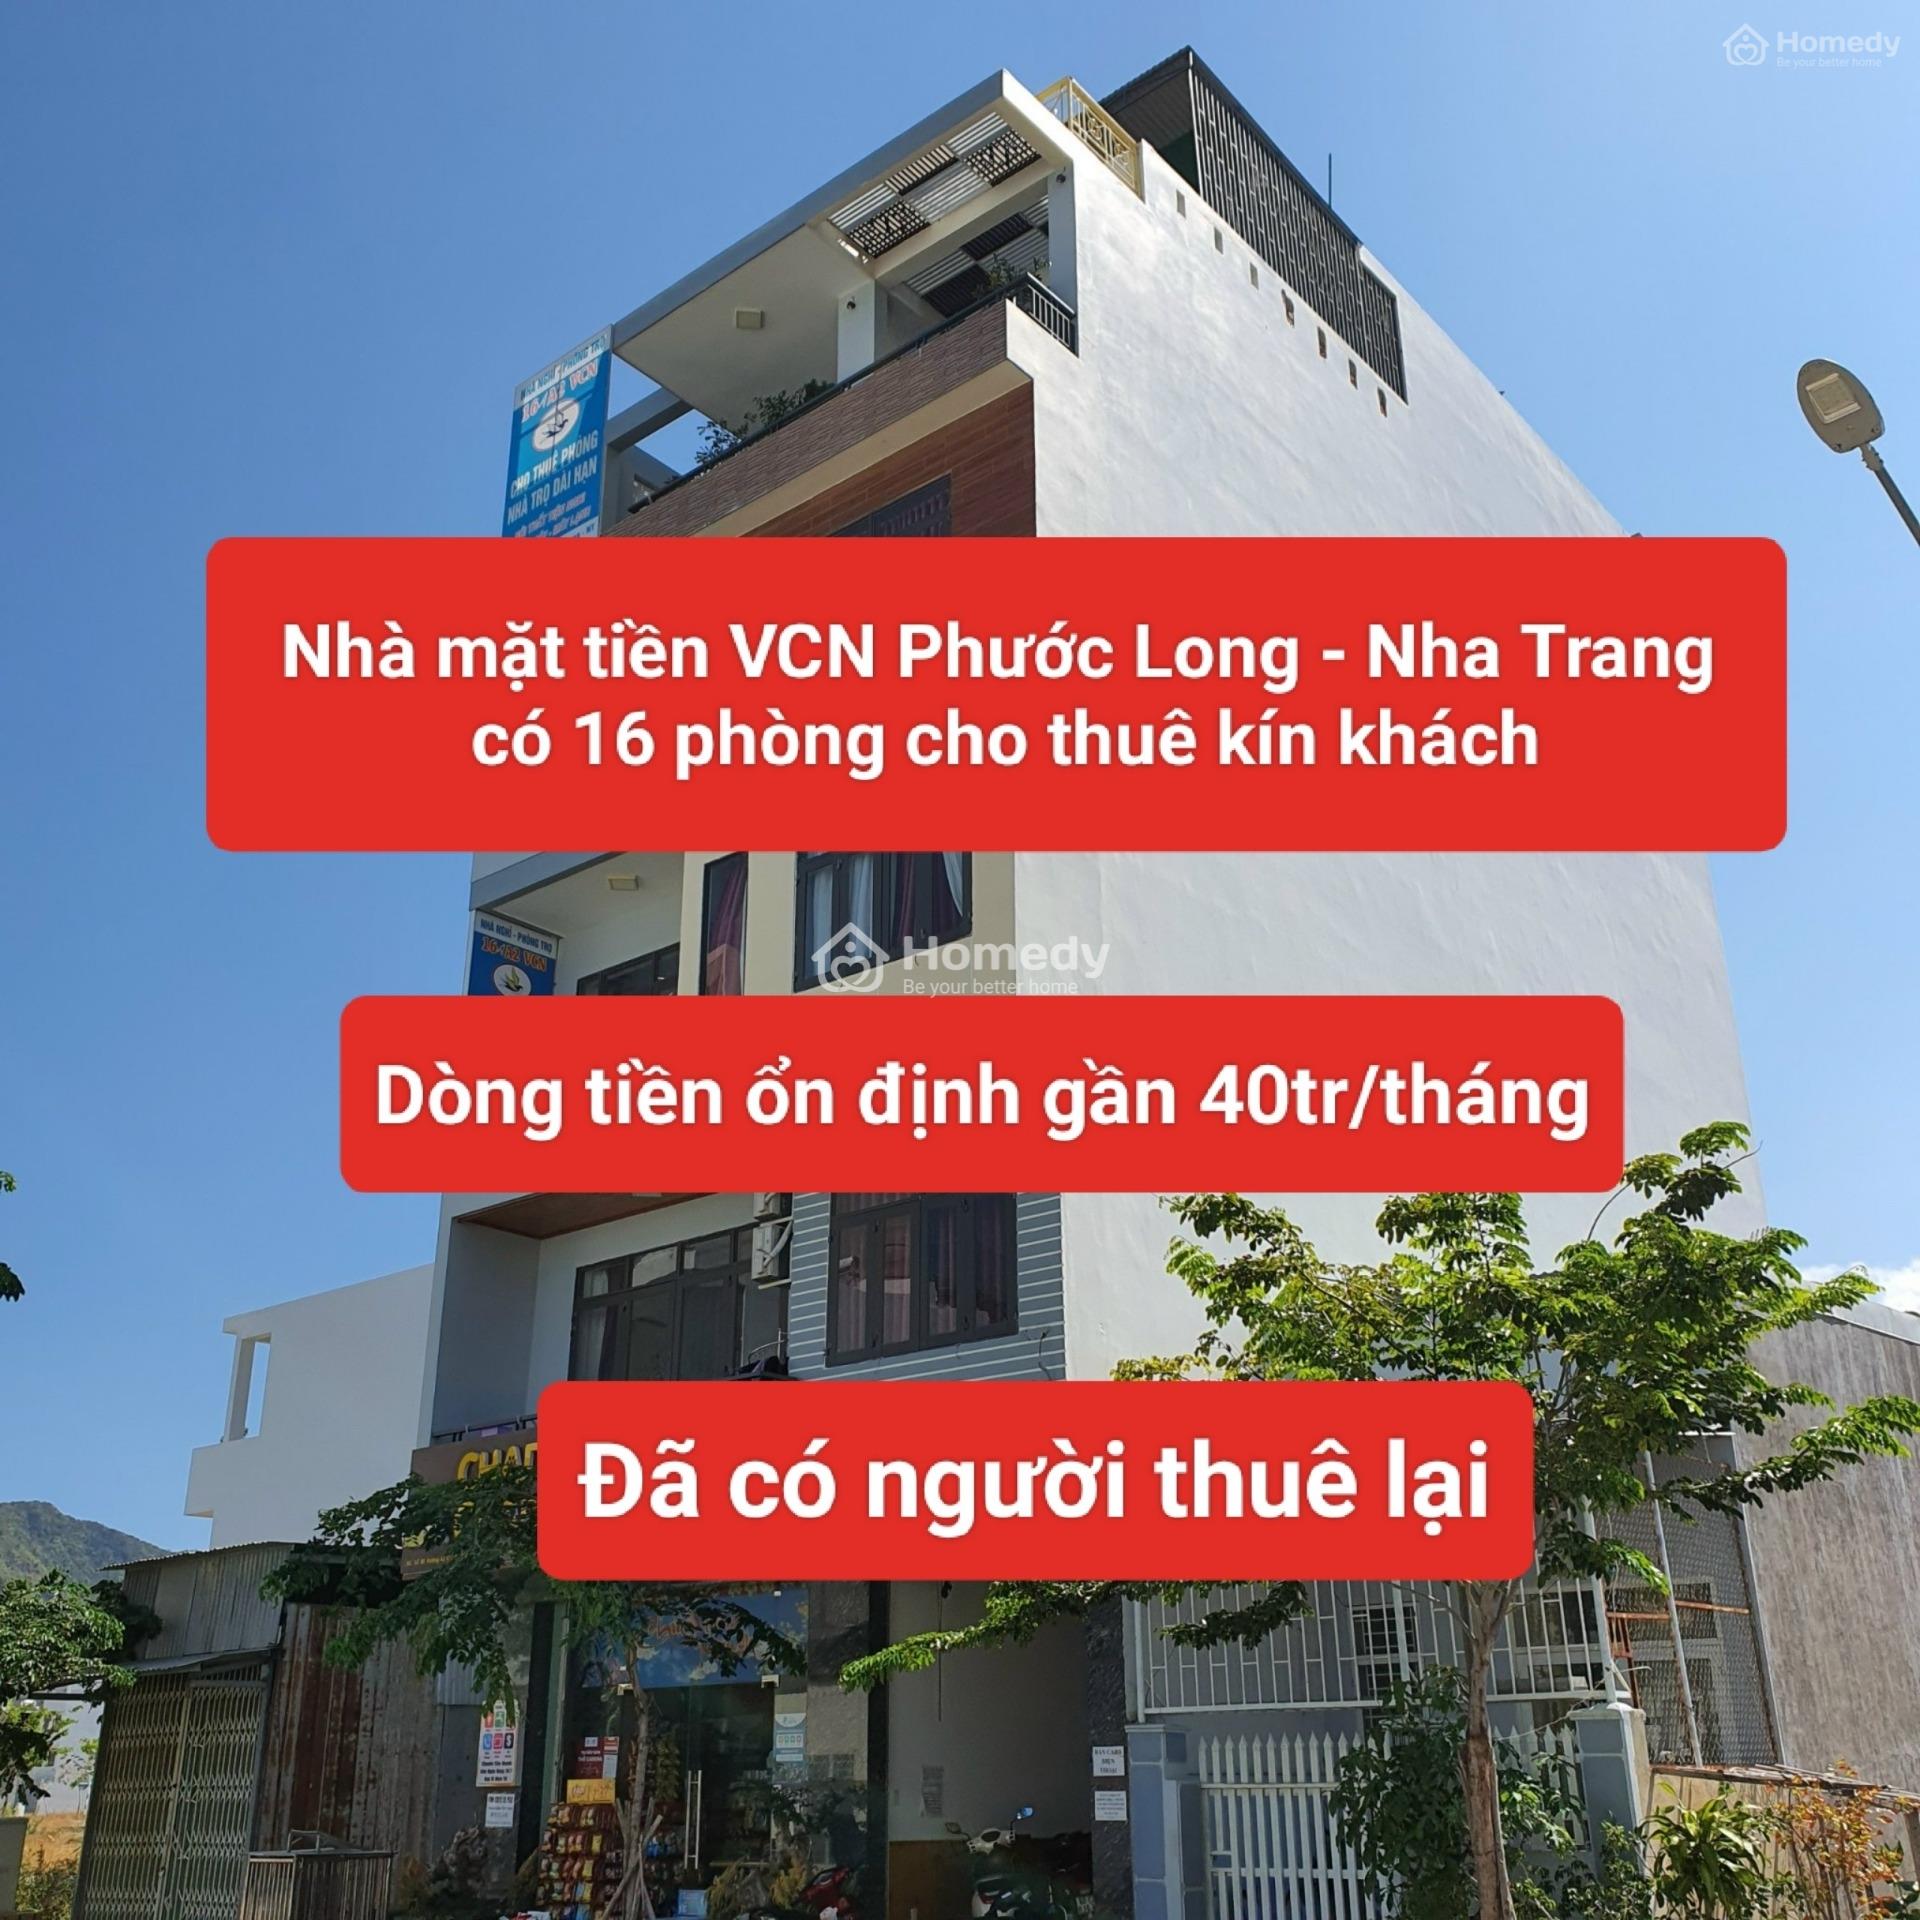 Bán Nhà Mặt Tiền Kđt Vcn Phước Long - Nha Trang Vừa Ở Kinh Doanh 16 Căn Hộ Kín Khách. Có Dòng Tiền